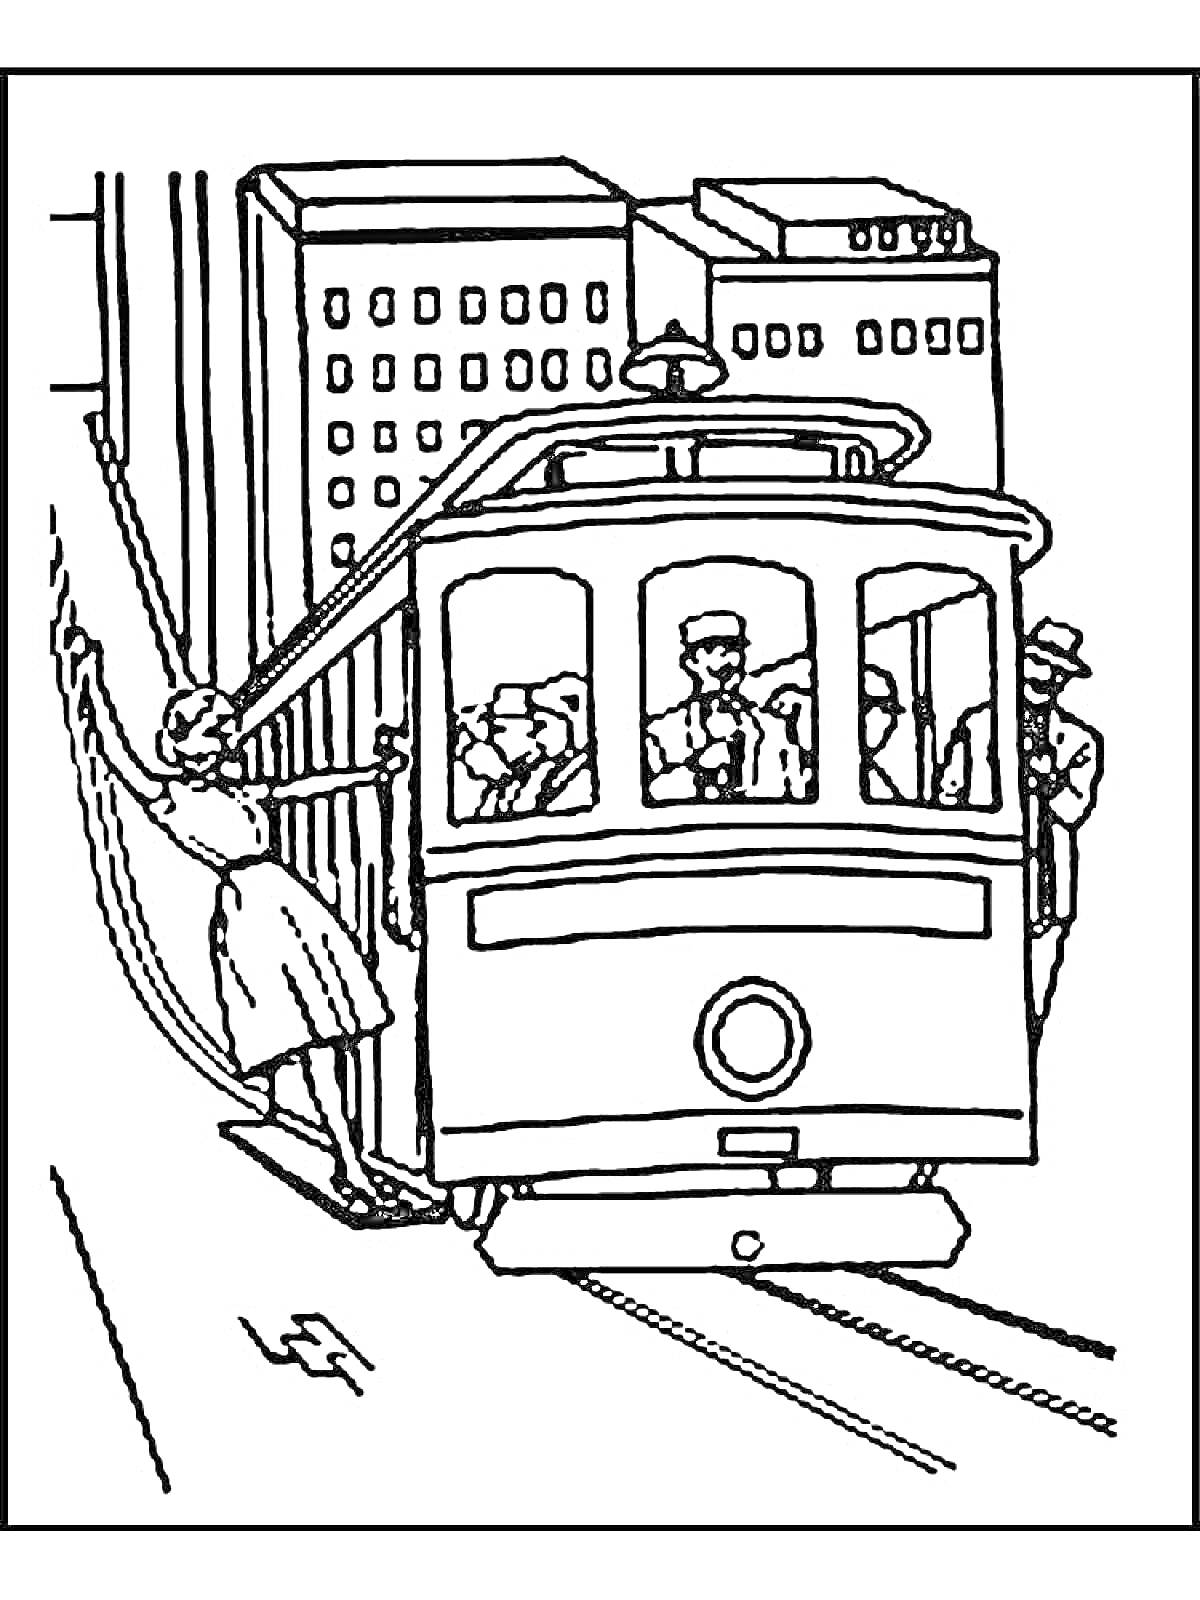 Раскраска Трамвай с пассажирами и водителем на фоне многоэтажных зданий